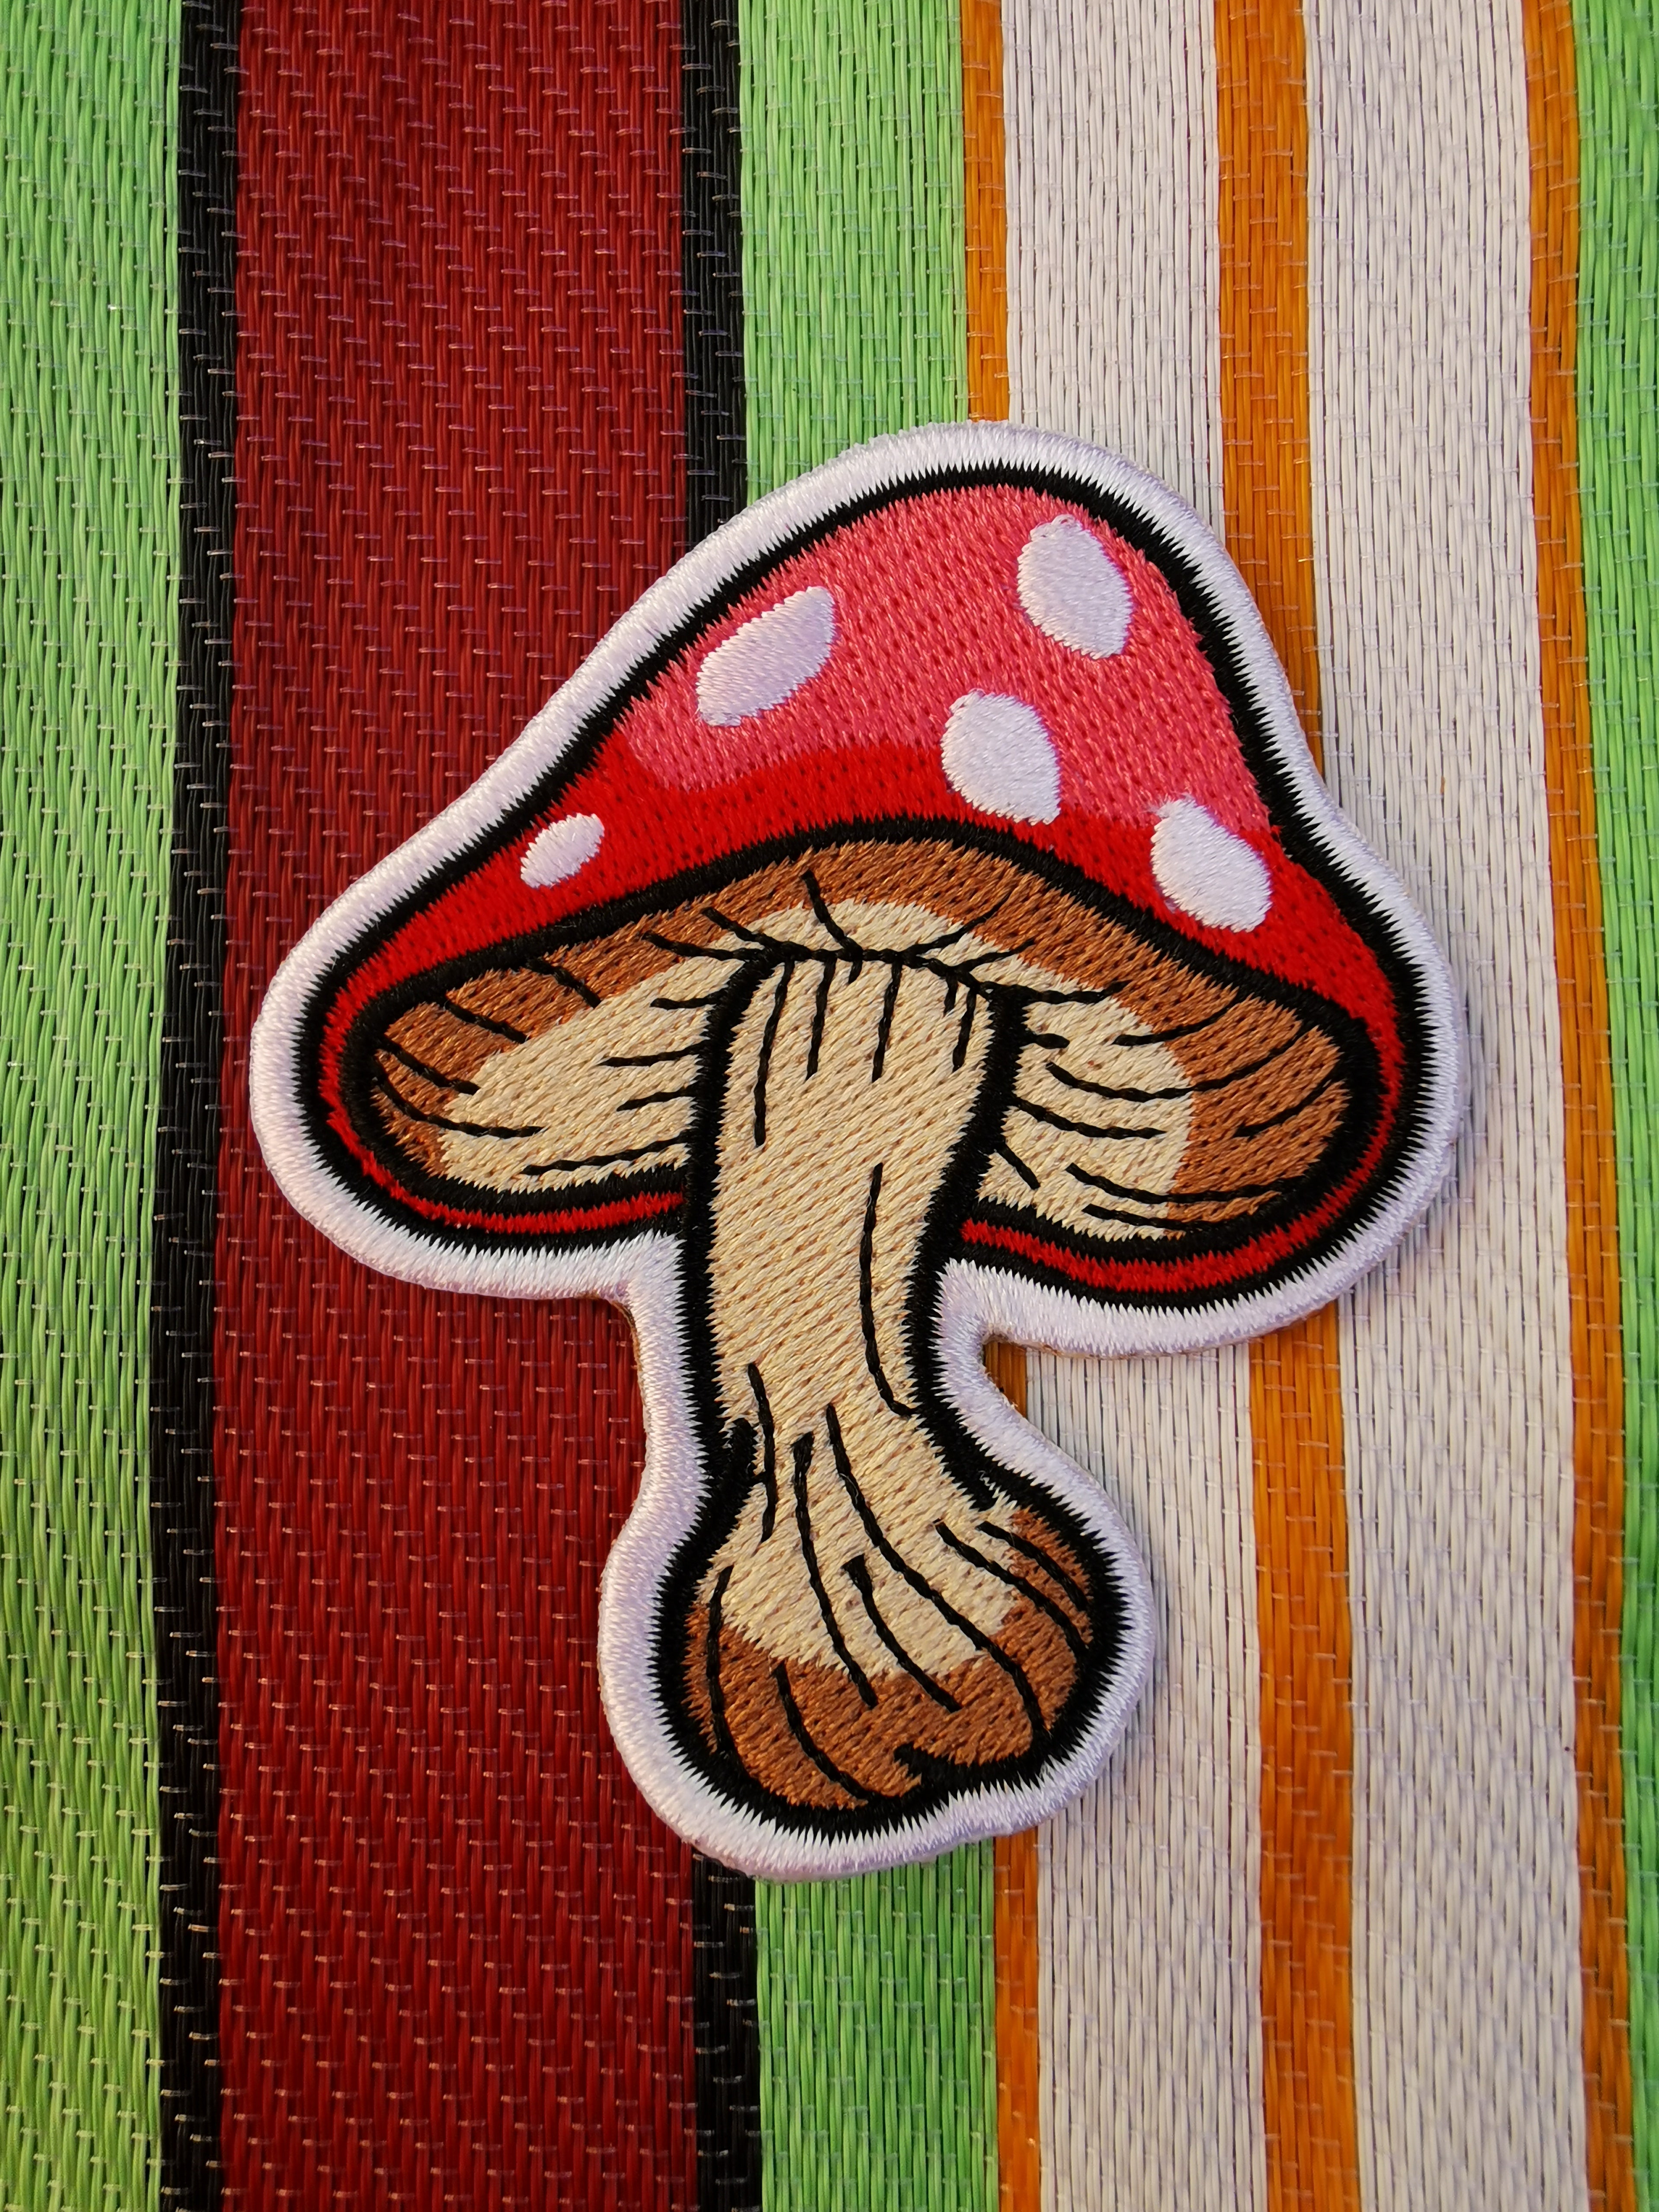 Marvellous Mushrooms